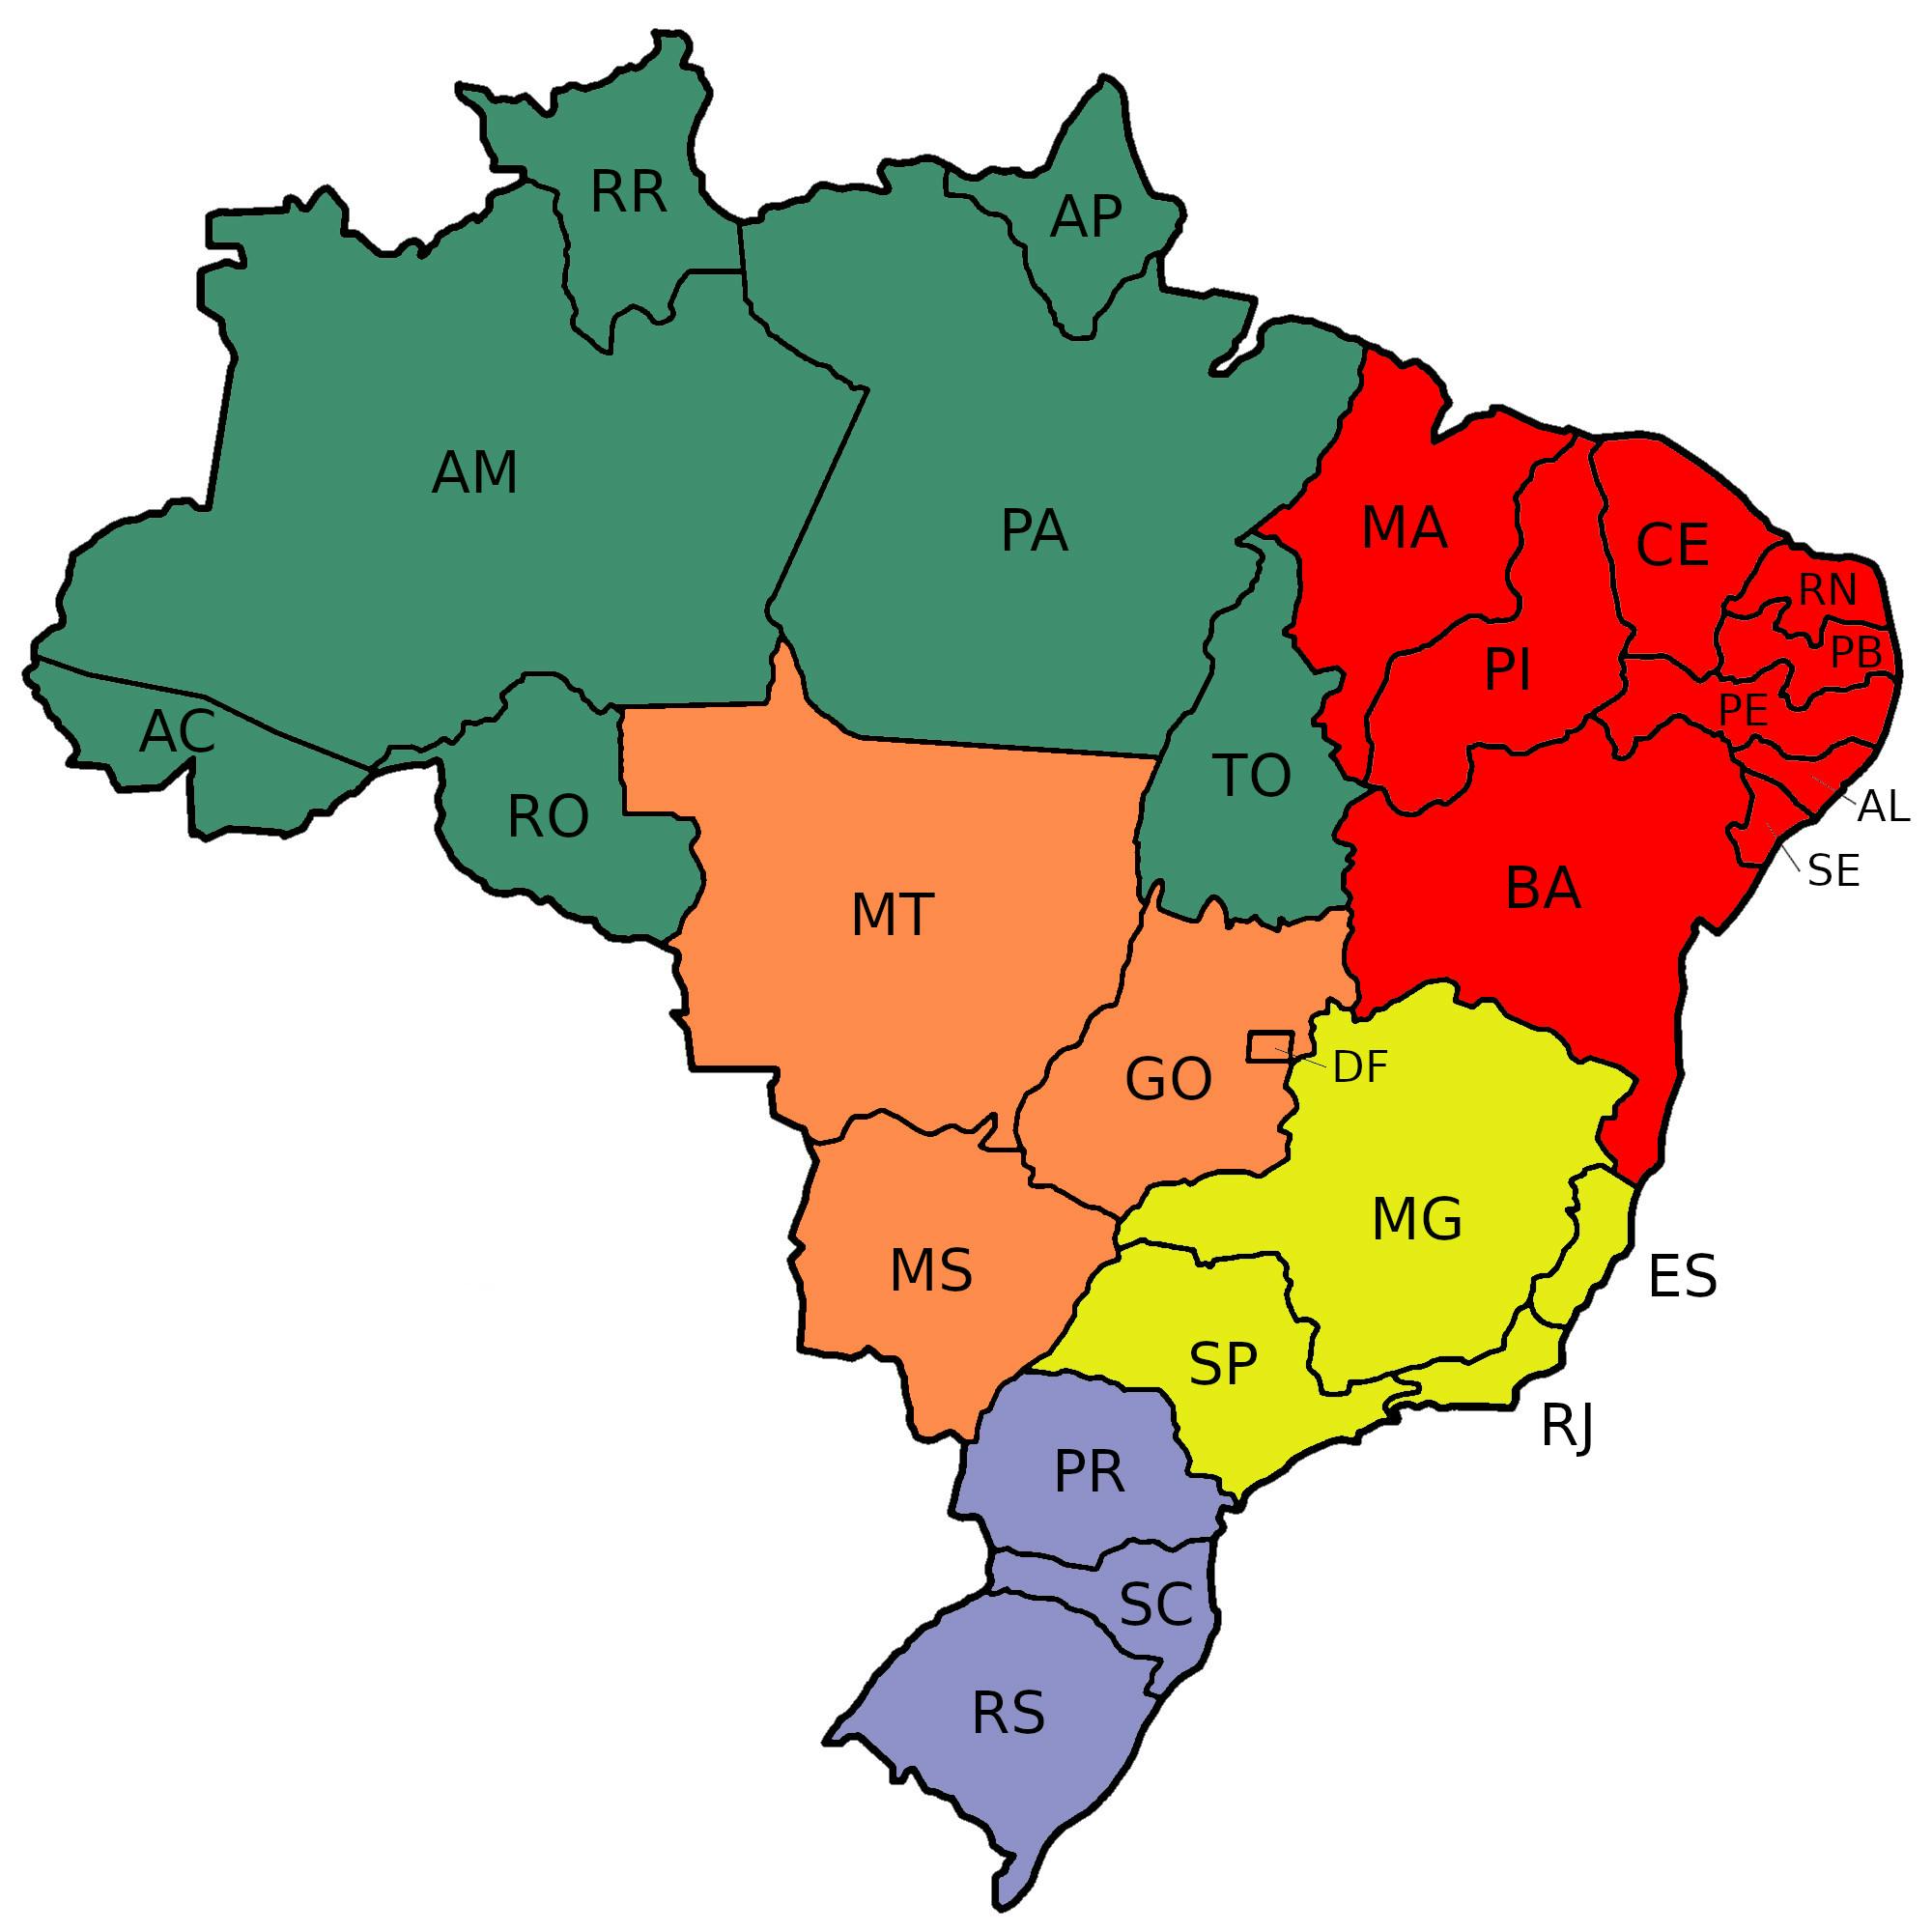 Que cor têm o mapa do Brasil?